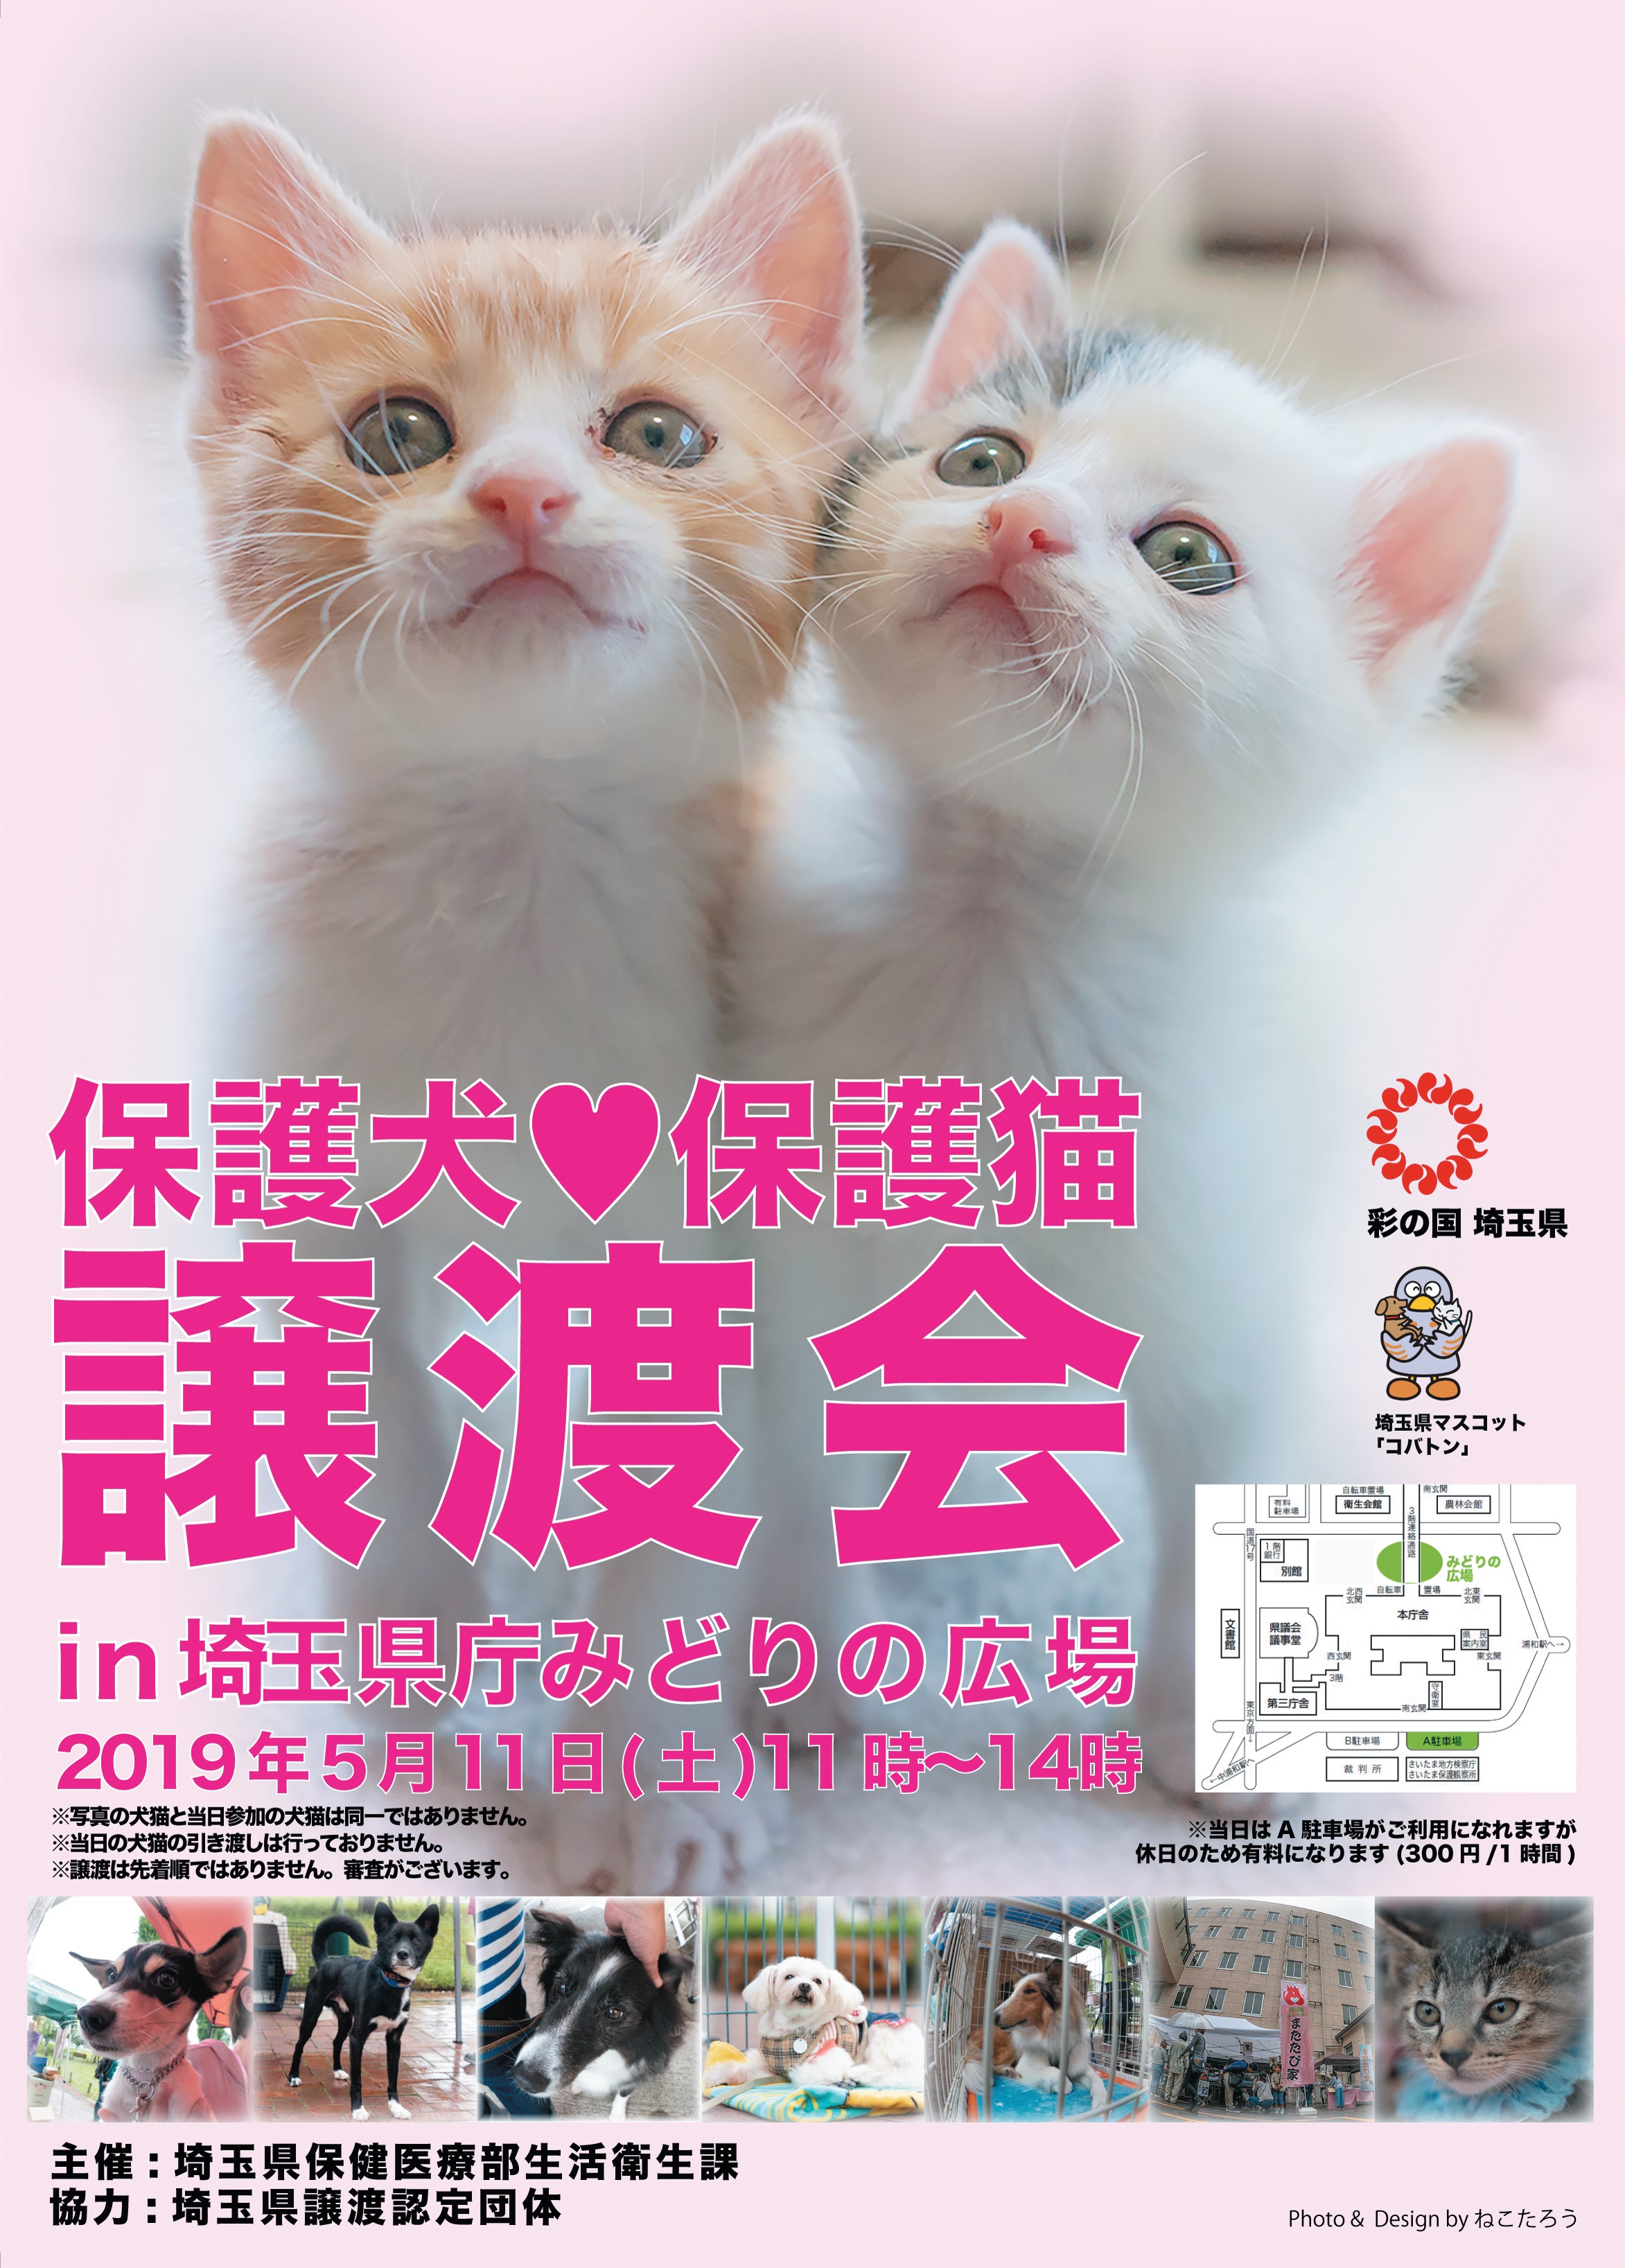 保護犬・保護猫譲渡会in埼玉県庁